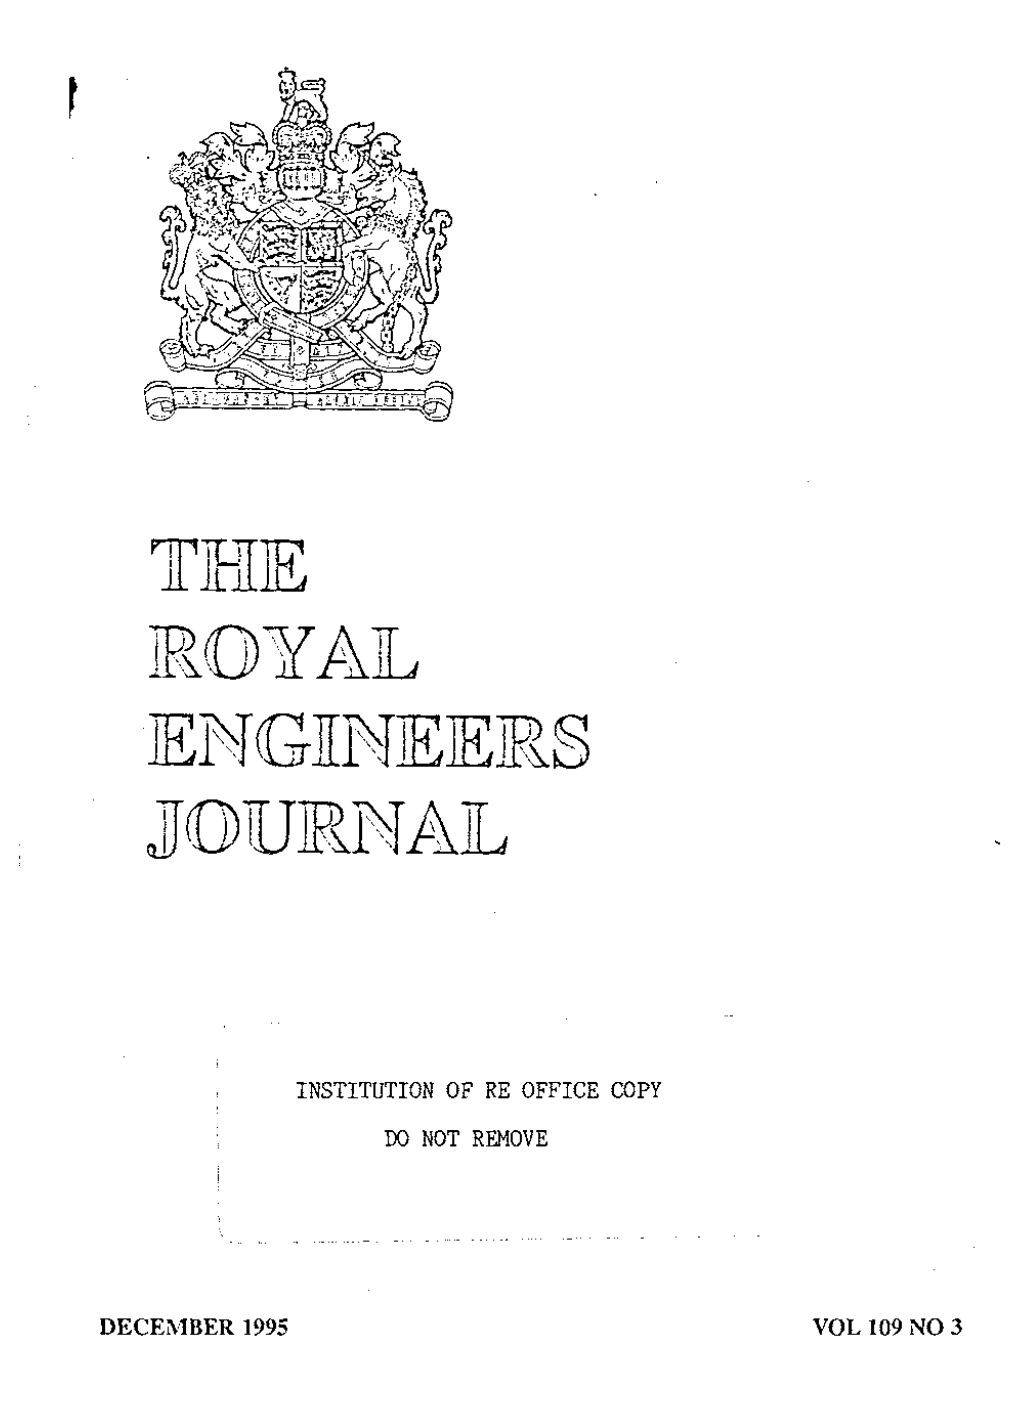 Royal Engineers Jourital